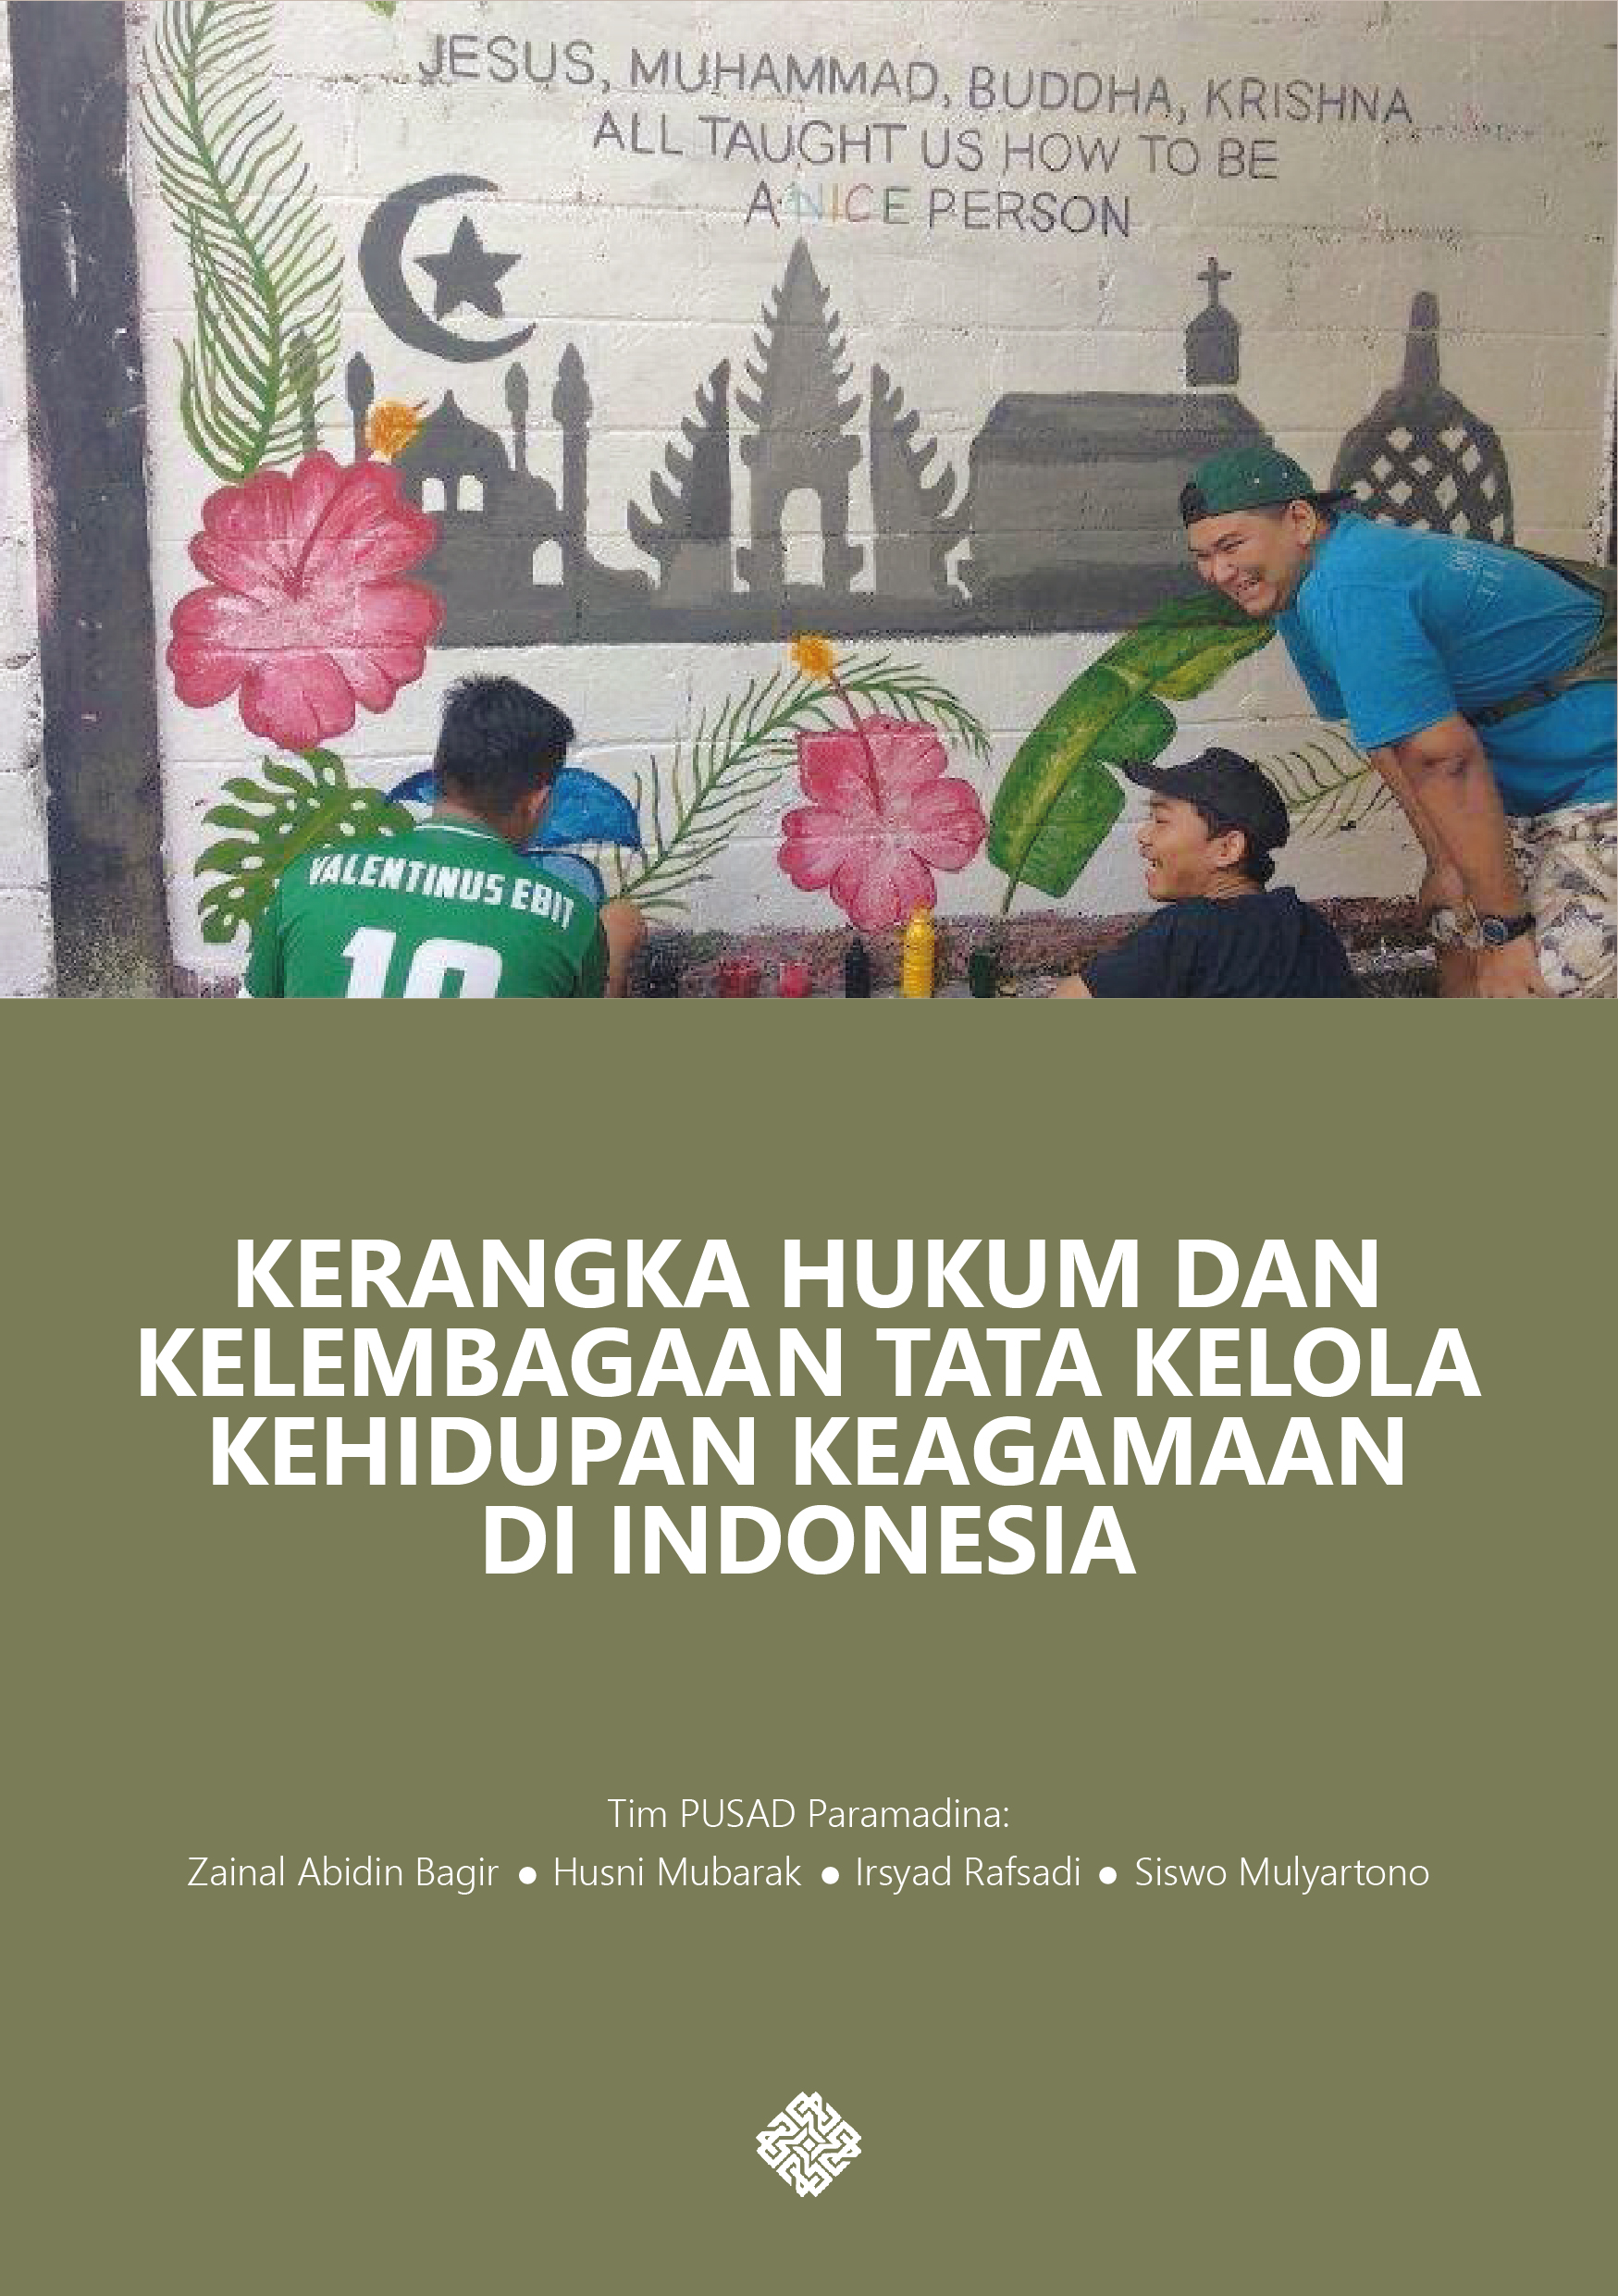 Sampul buku "Kerangka Hukum dan Kelembagaan Tata Kelola Keagamaan di Indonesia"